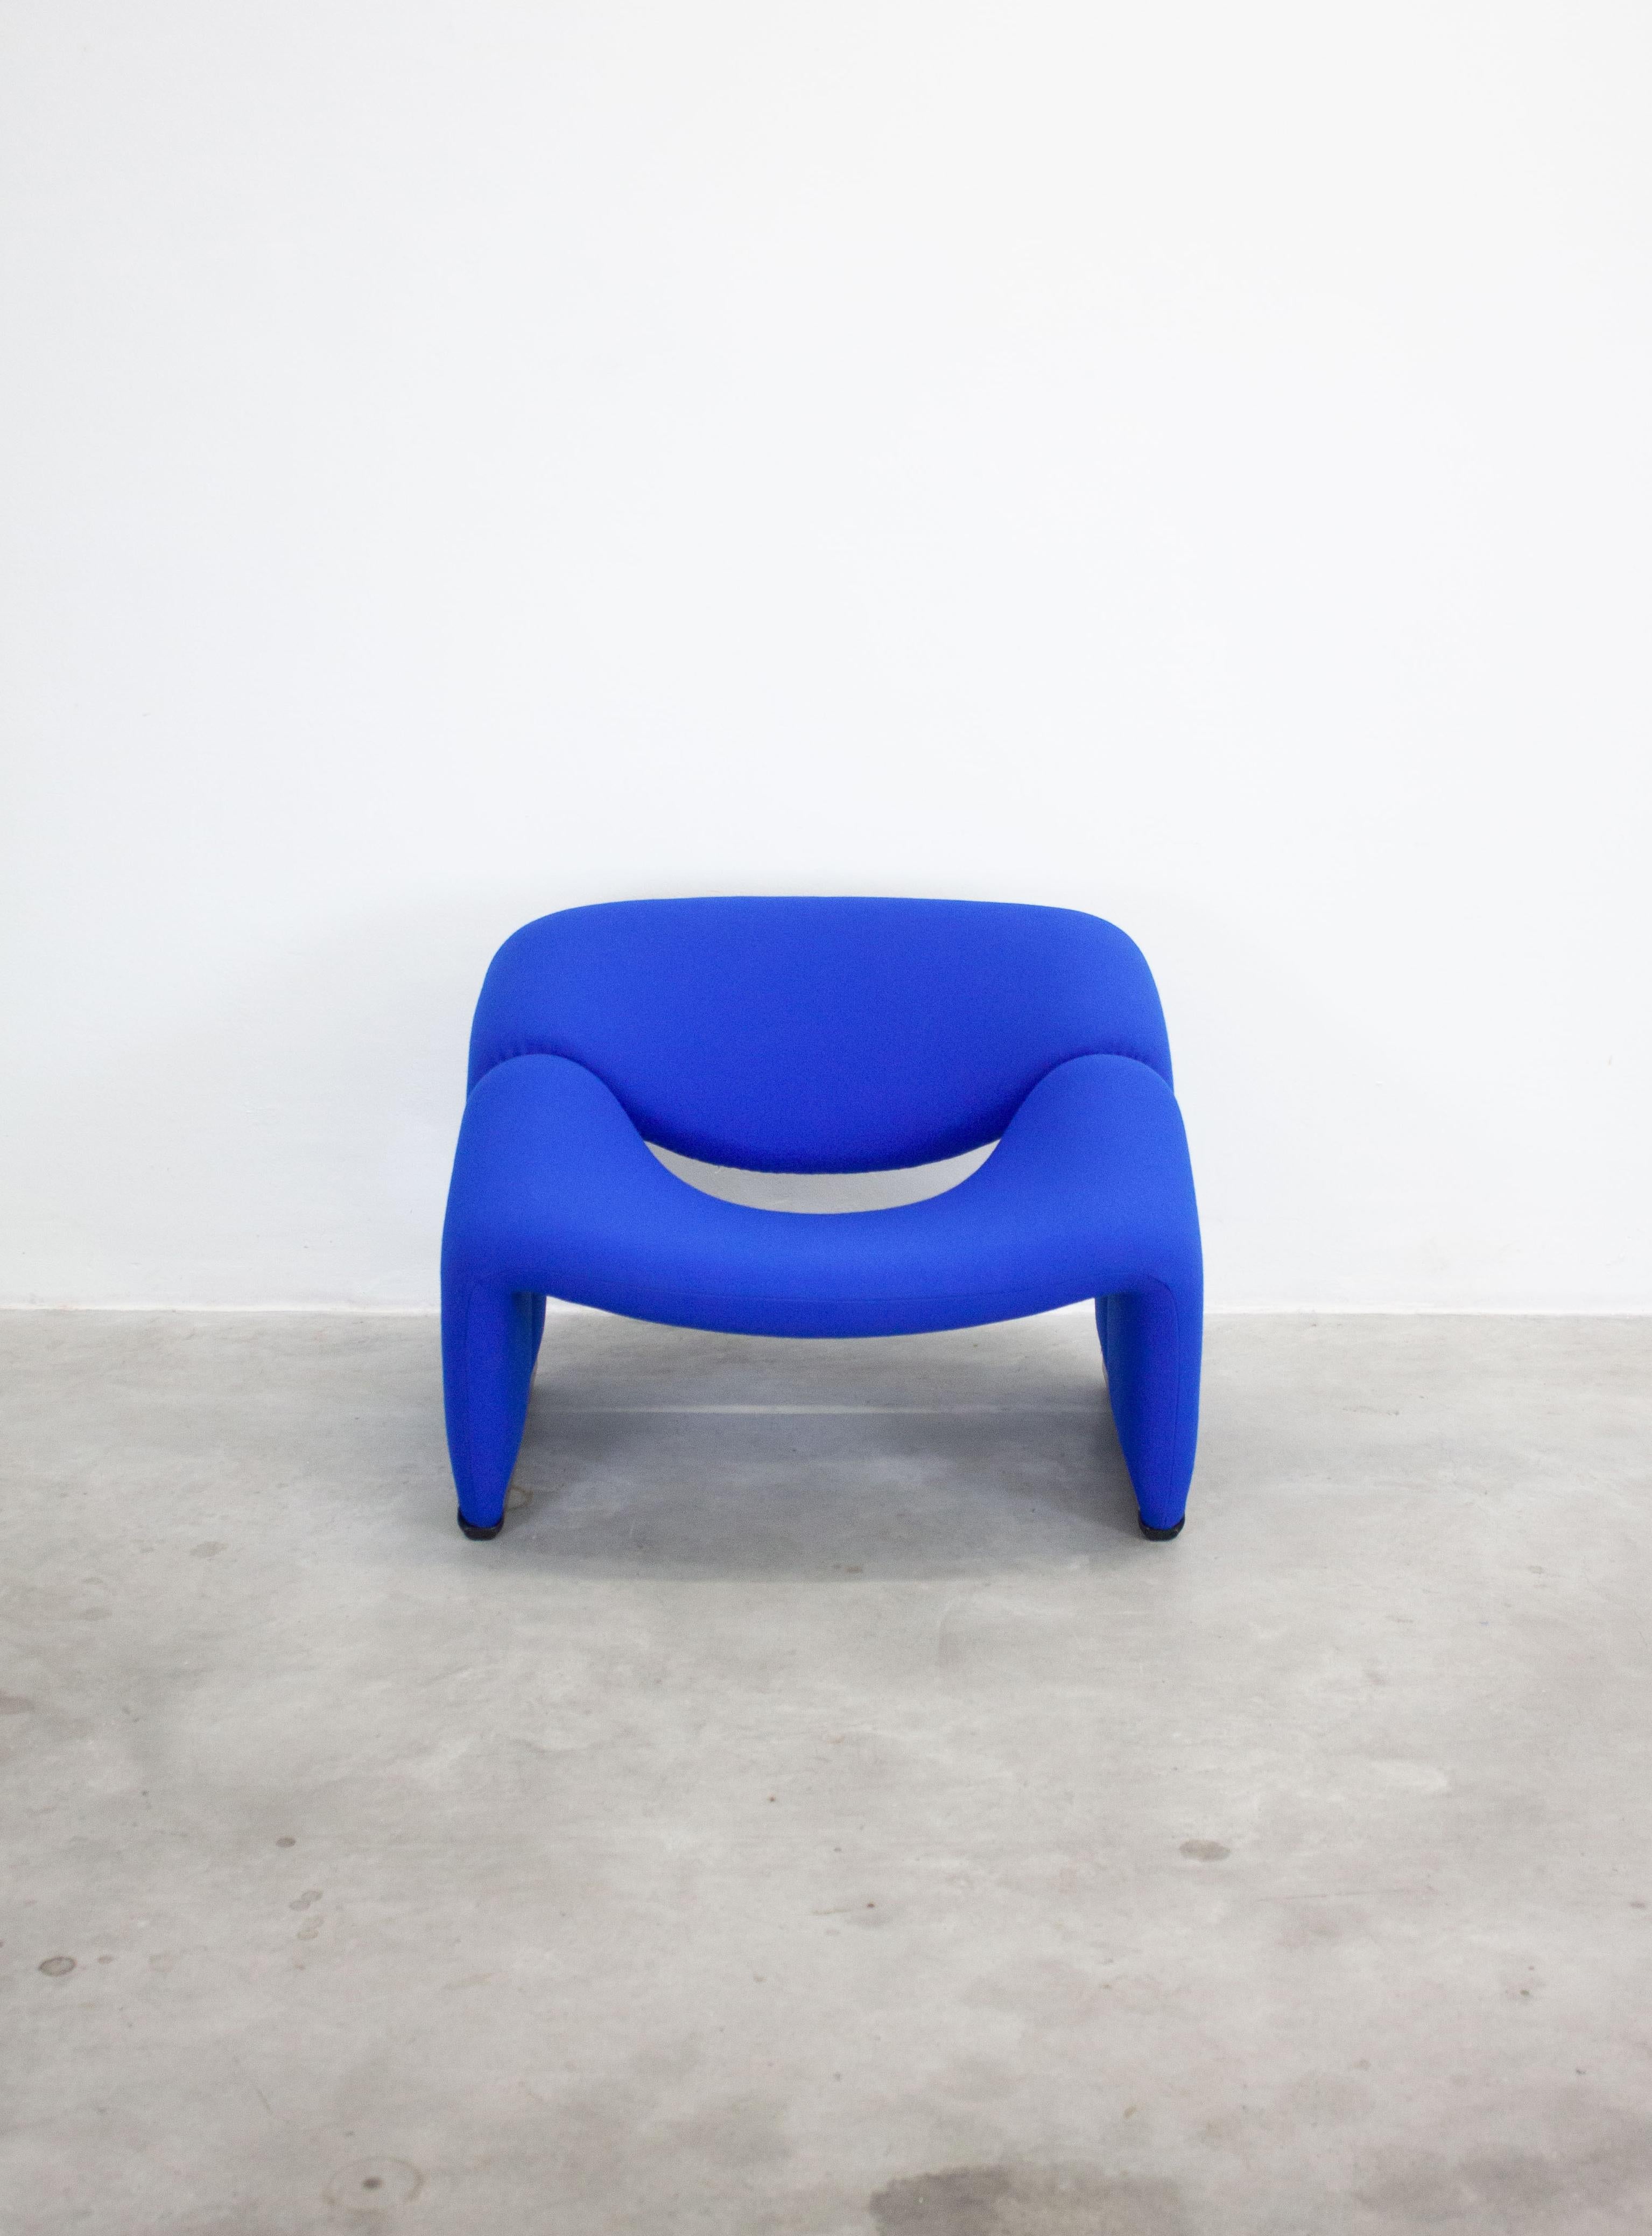 Artifort Groovy F598 oder M Lounge Chairs von Pierre Paulin in einer unserer Lieblingsfarben: Kobaltblau. Paulin entwarf diese 1960 für Castelli - Italien. Der holländische Hersteller Artifort erhielt ebenfalls eine Lizenz für die Produktion, wo